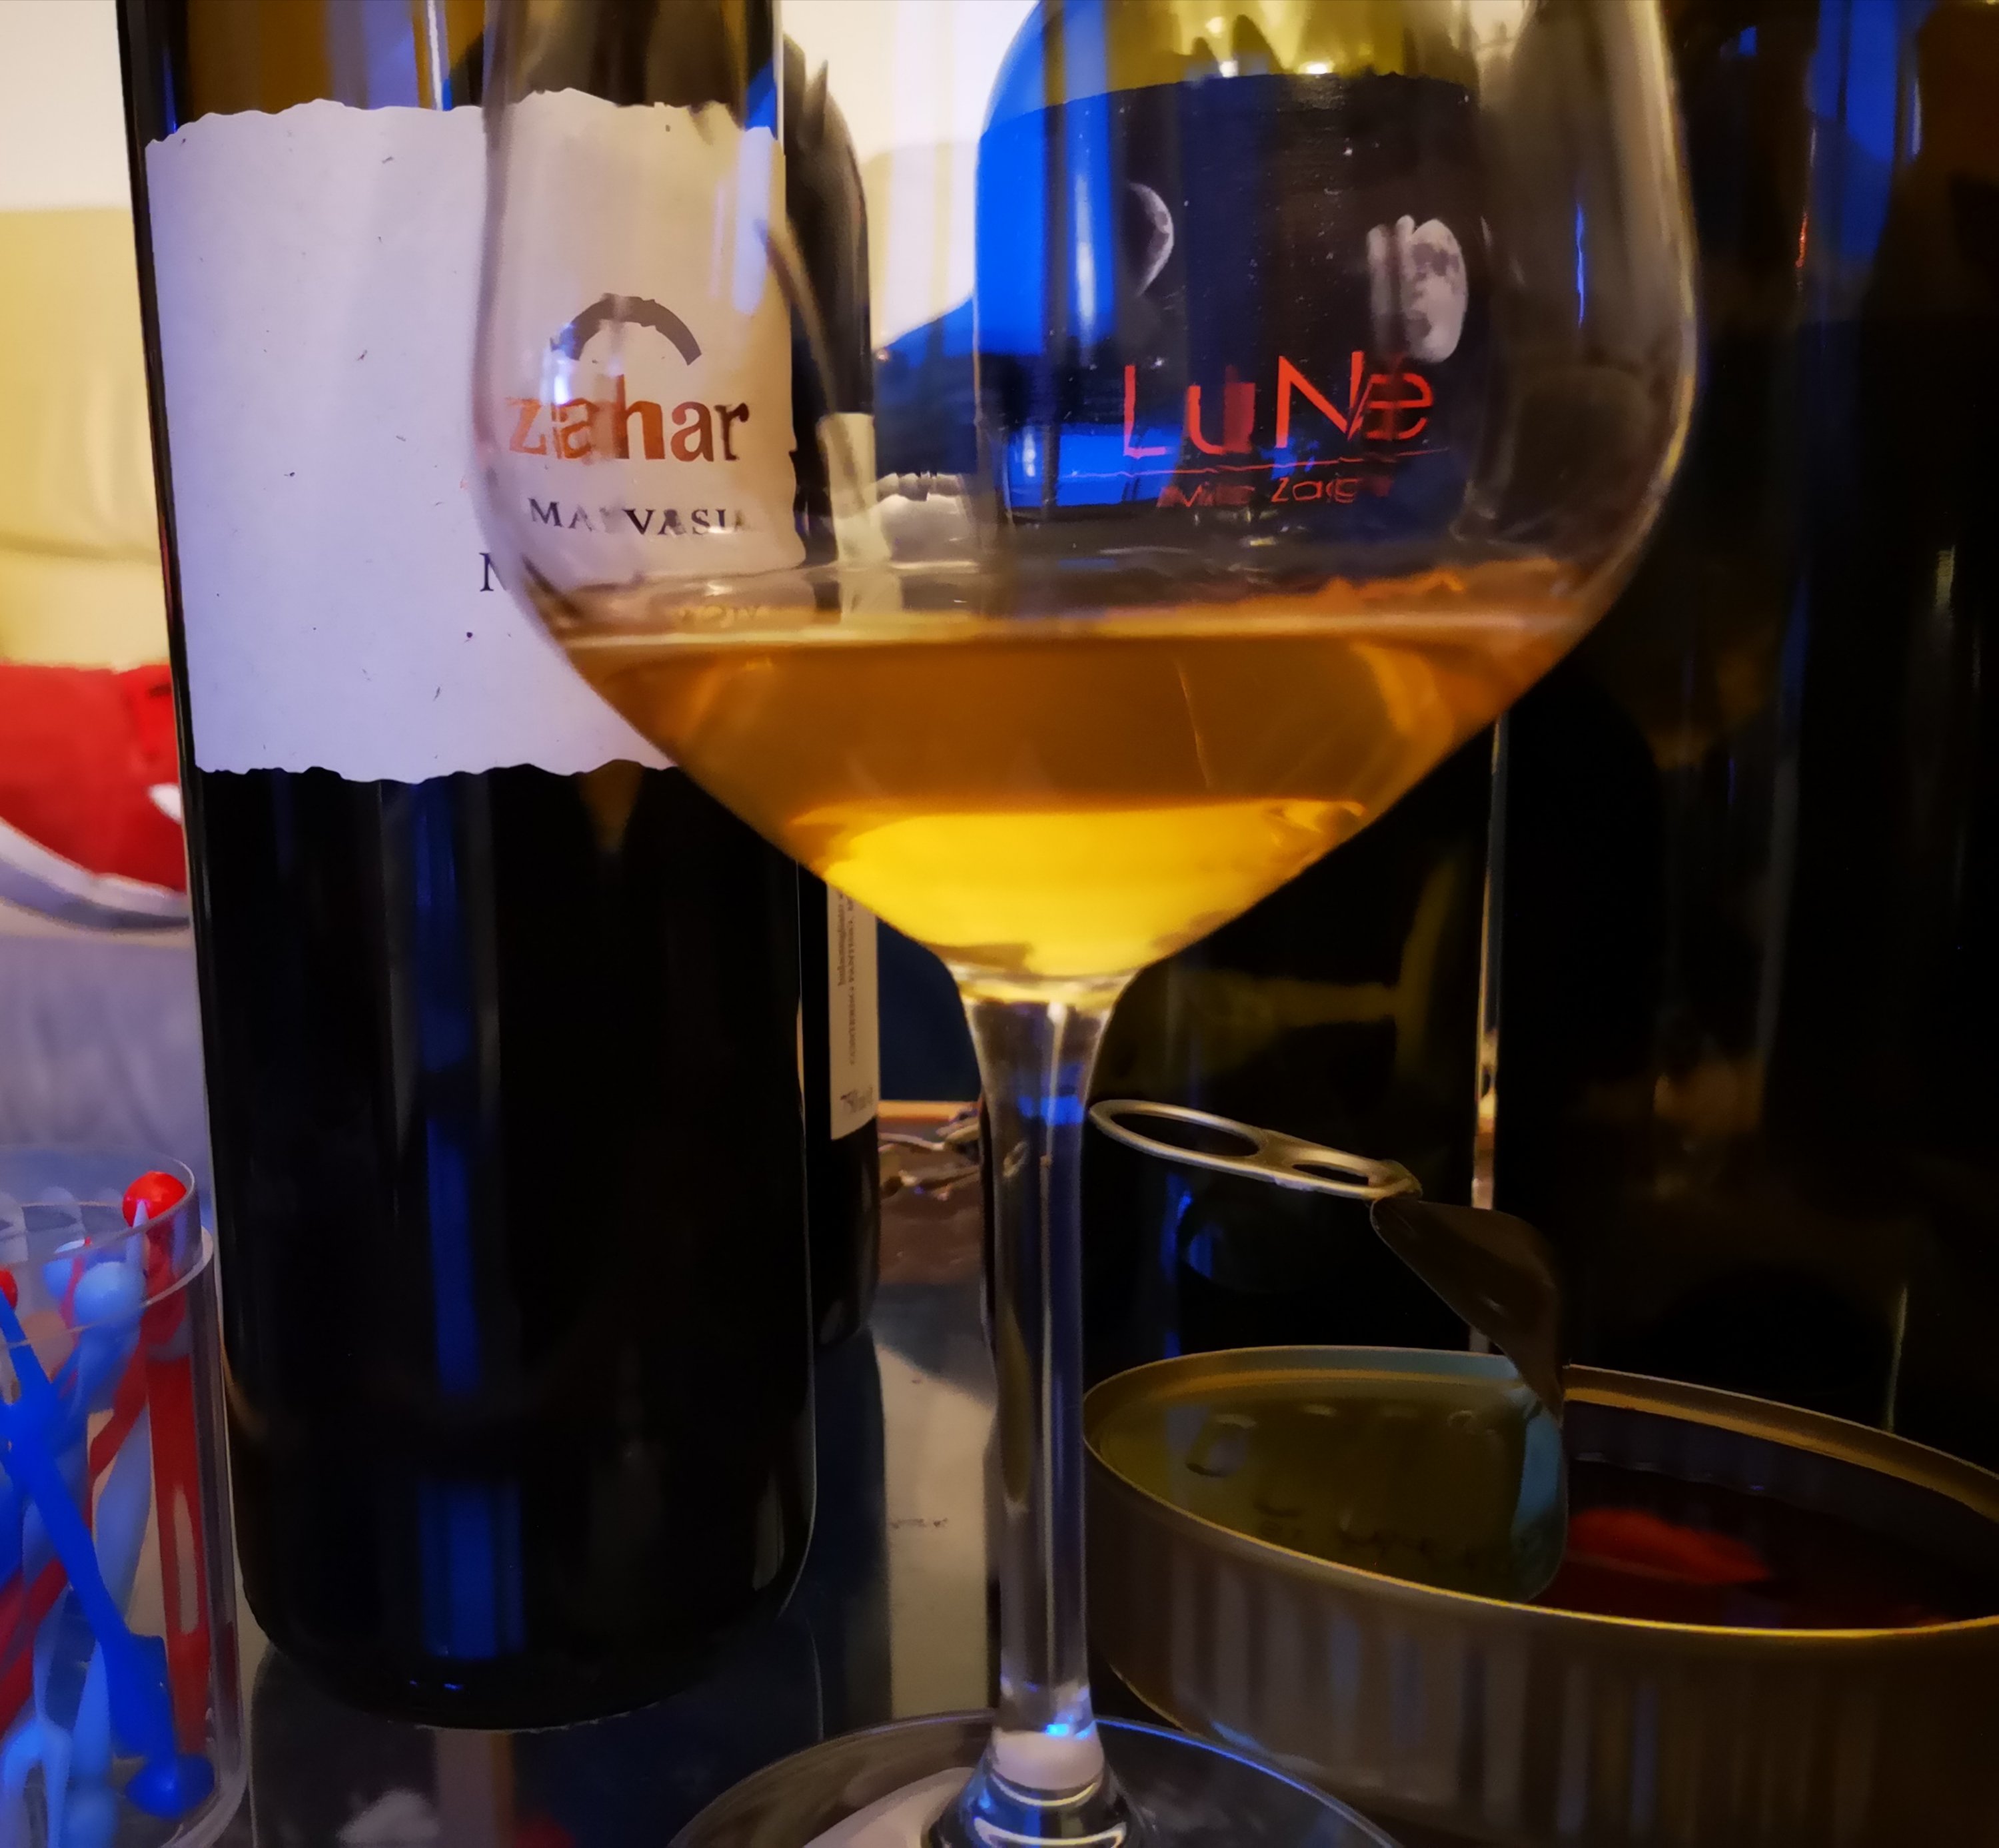 Enonauta/Degustazione di Vino #136-139 - review - Malvasia Zahar/Bezga Milic/Dolcetto d'Alba Roddolo/Nebbiolo Ginestrino 19 Conterno Fantino